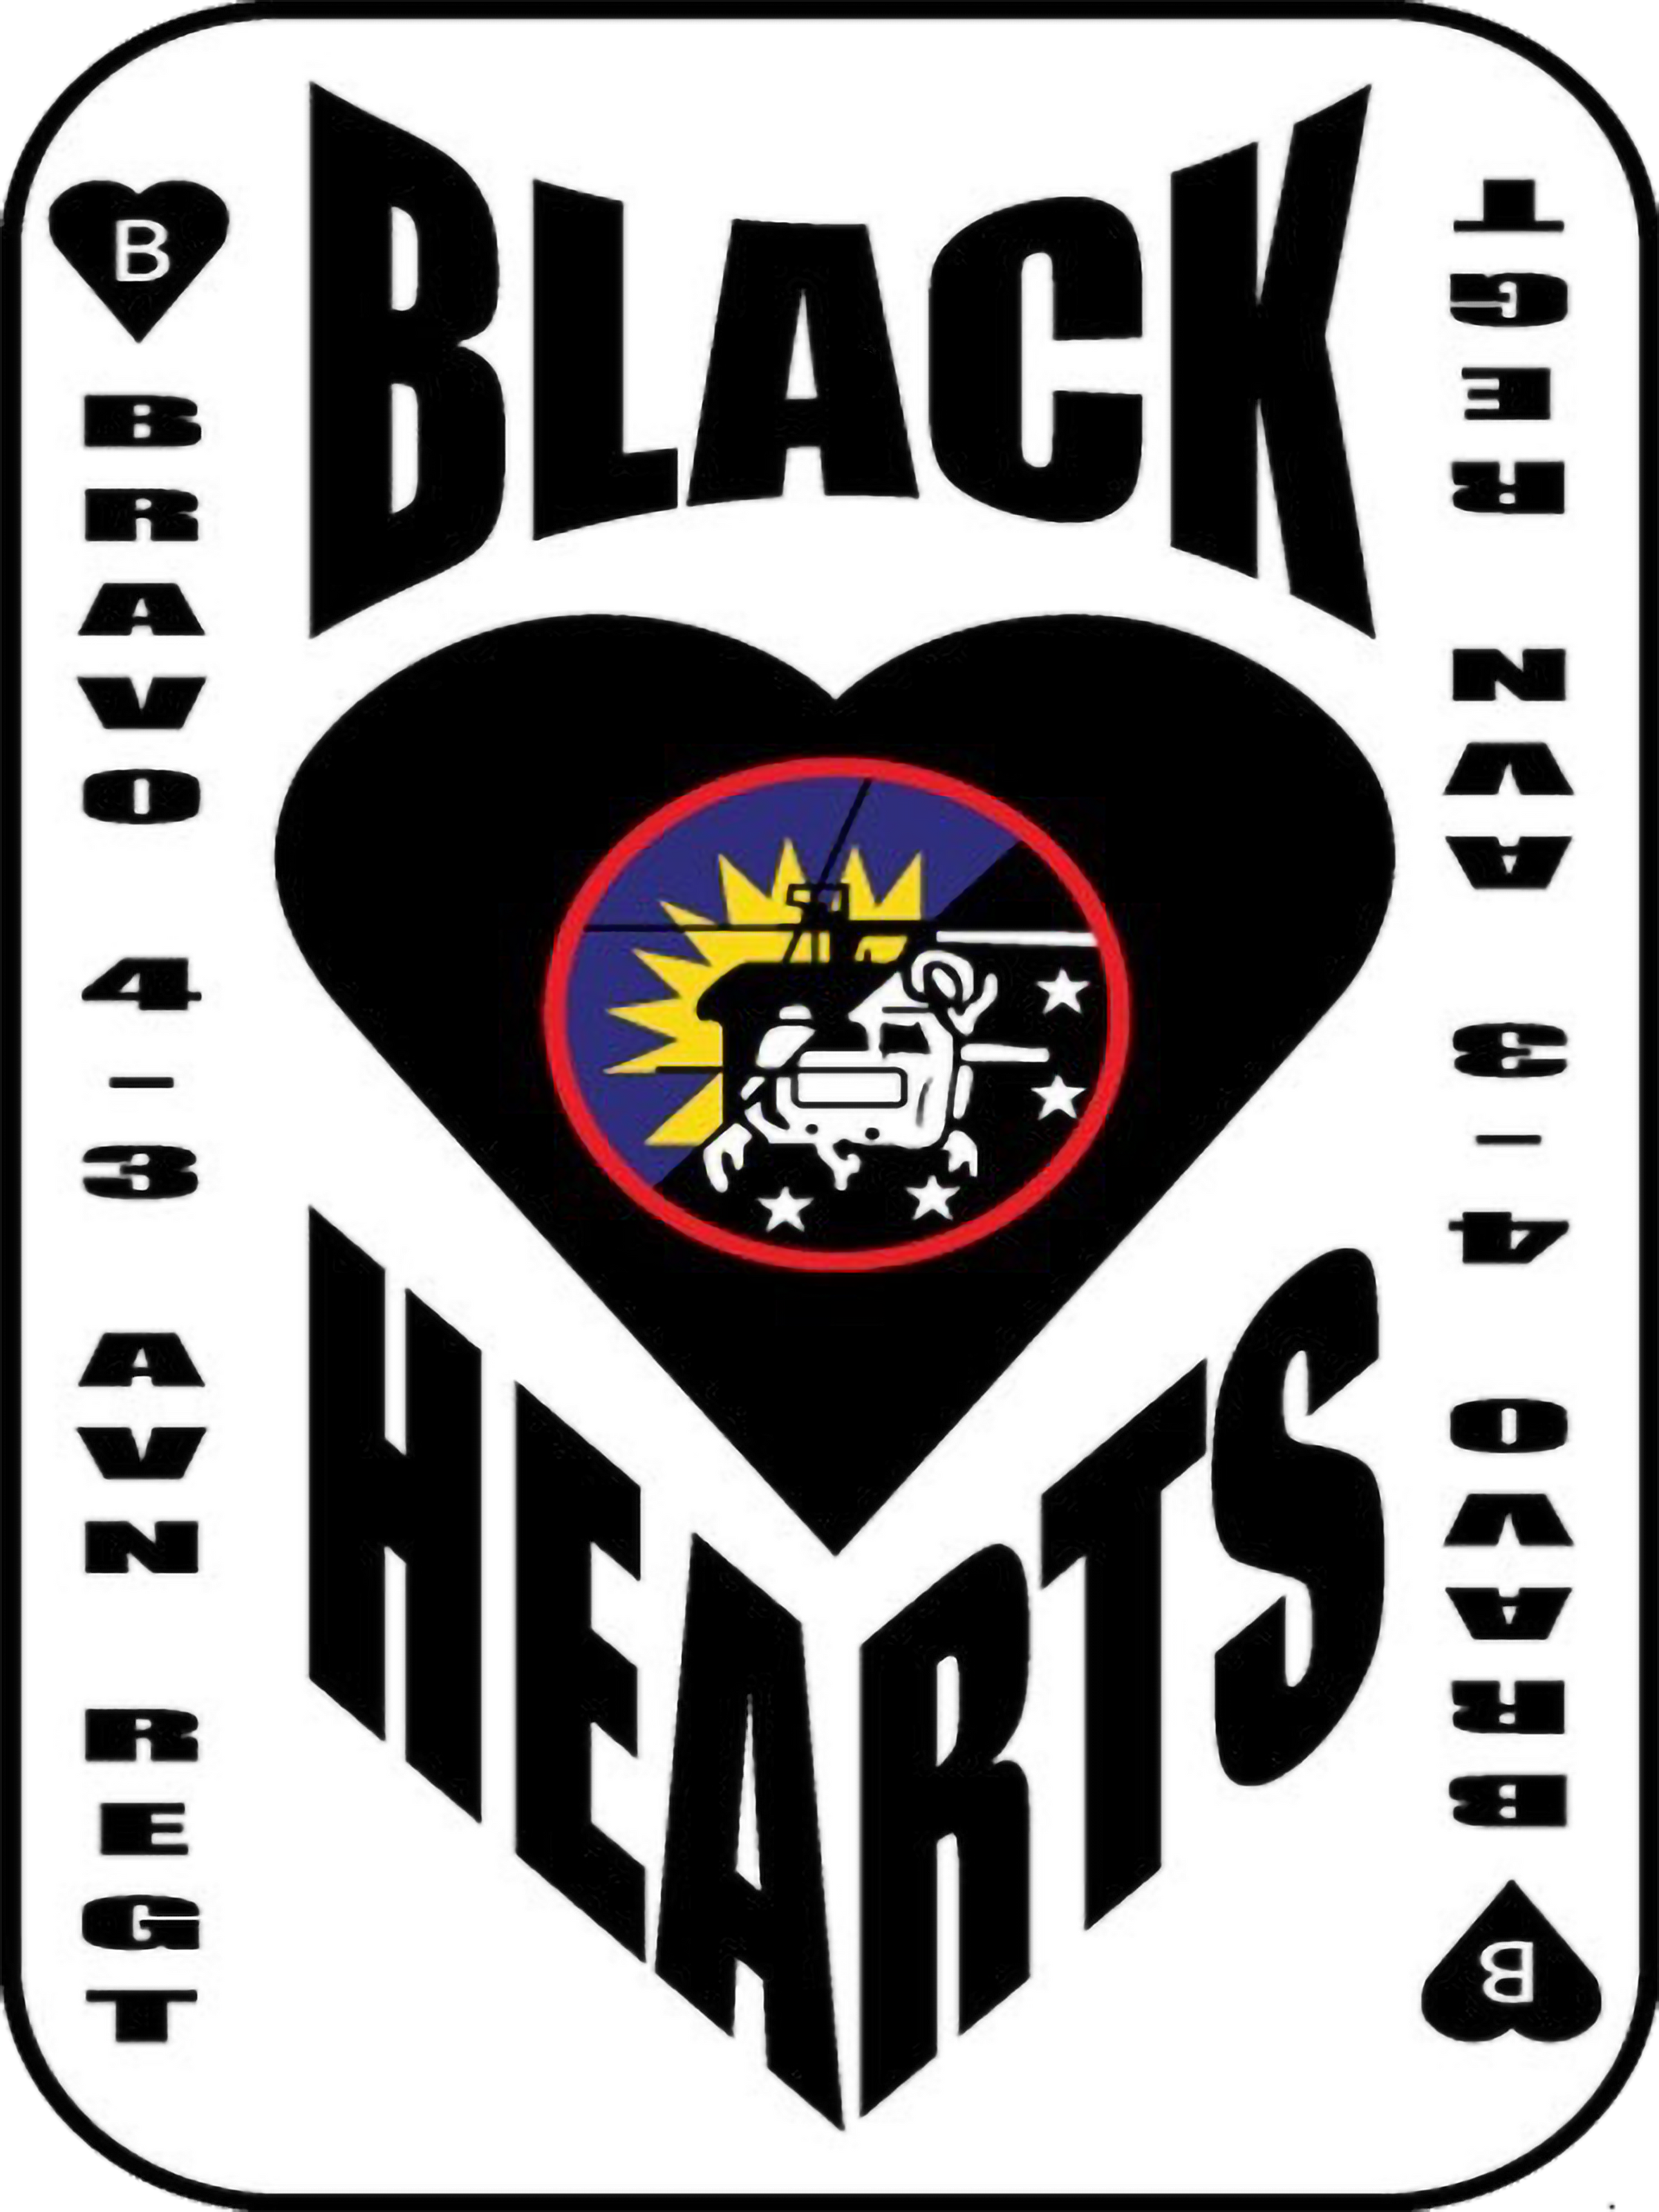 B Co, 4-3 AHB "Black Hearts"